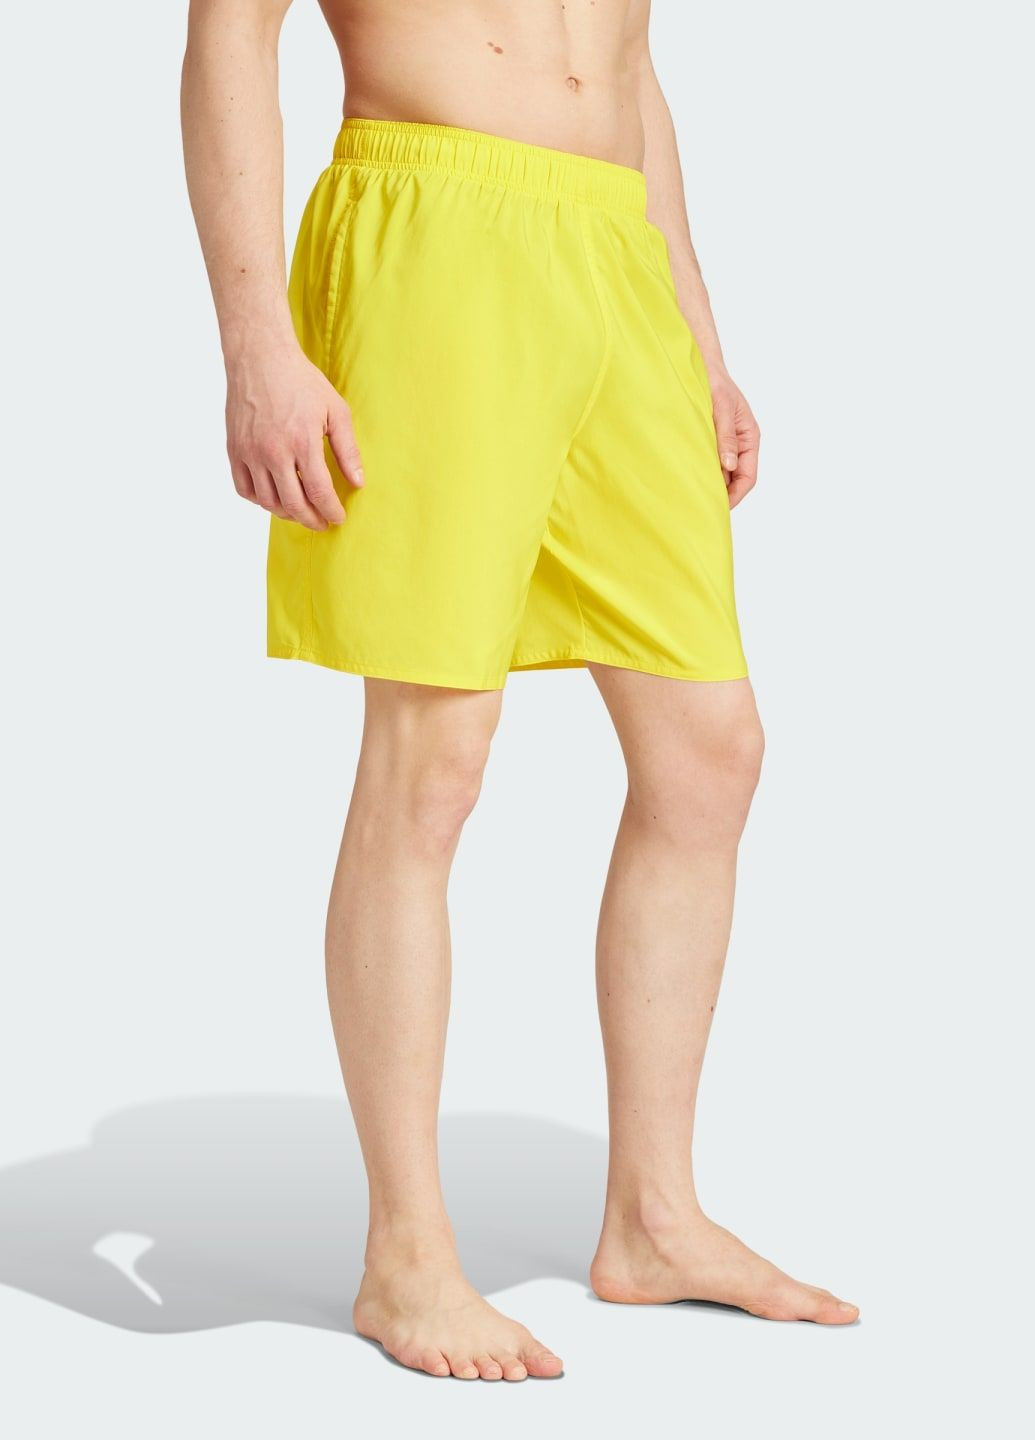 Мужские желтые спортивные плавательные шорты solid clx classic-length adidas